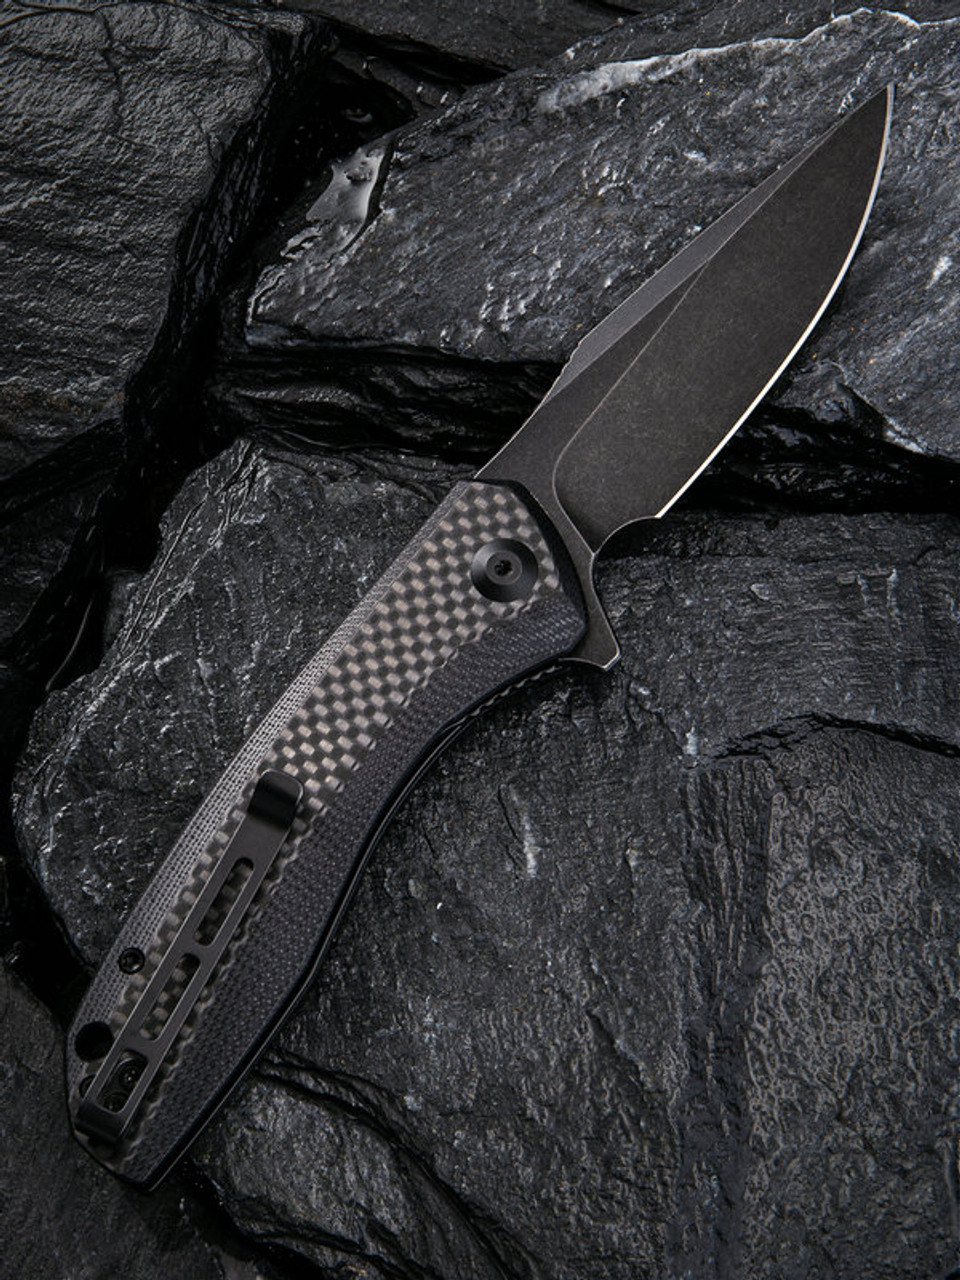 CIVIVI Baklash Folding Knife (C801I)- 3.50" Blackwashed 9Cr18MoV Drop Point Blade, Black G-10 and Carbon Fiber Overlay Handles